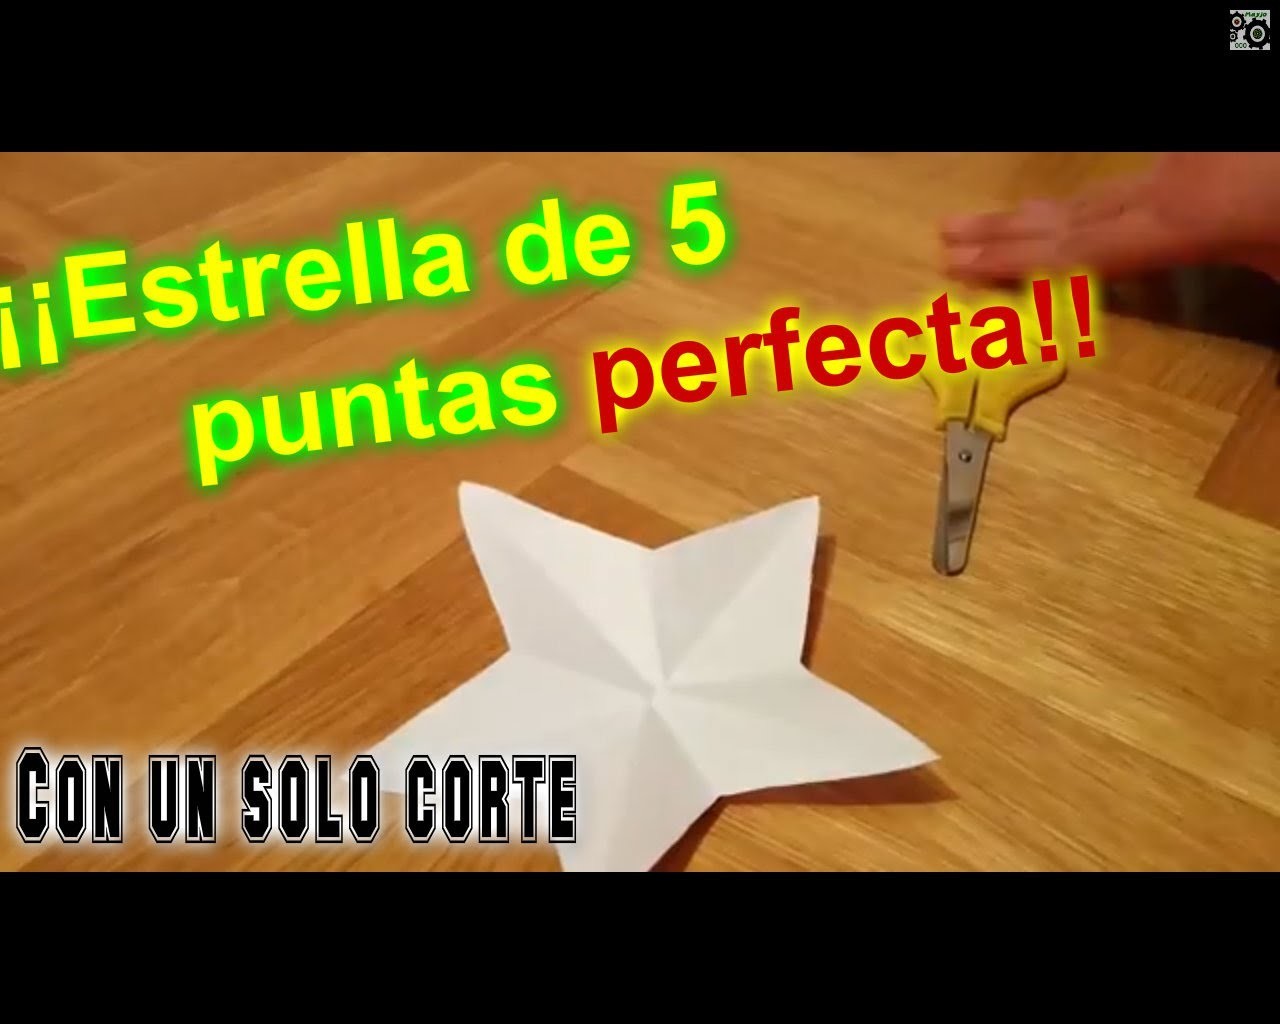 Tutorial: Cómo hacer una estrella de 5 puntas perfecta con un sólo corte.